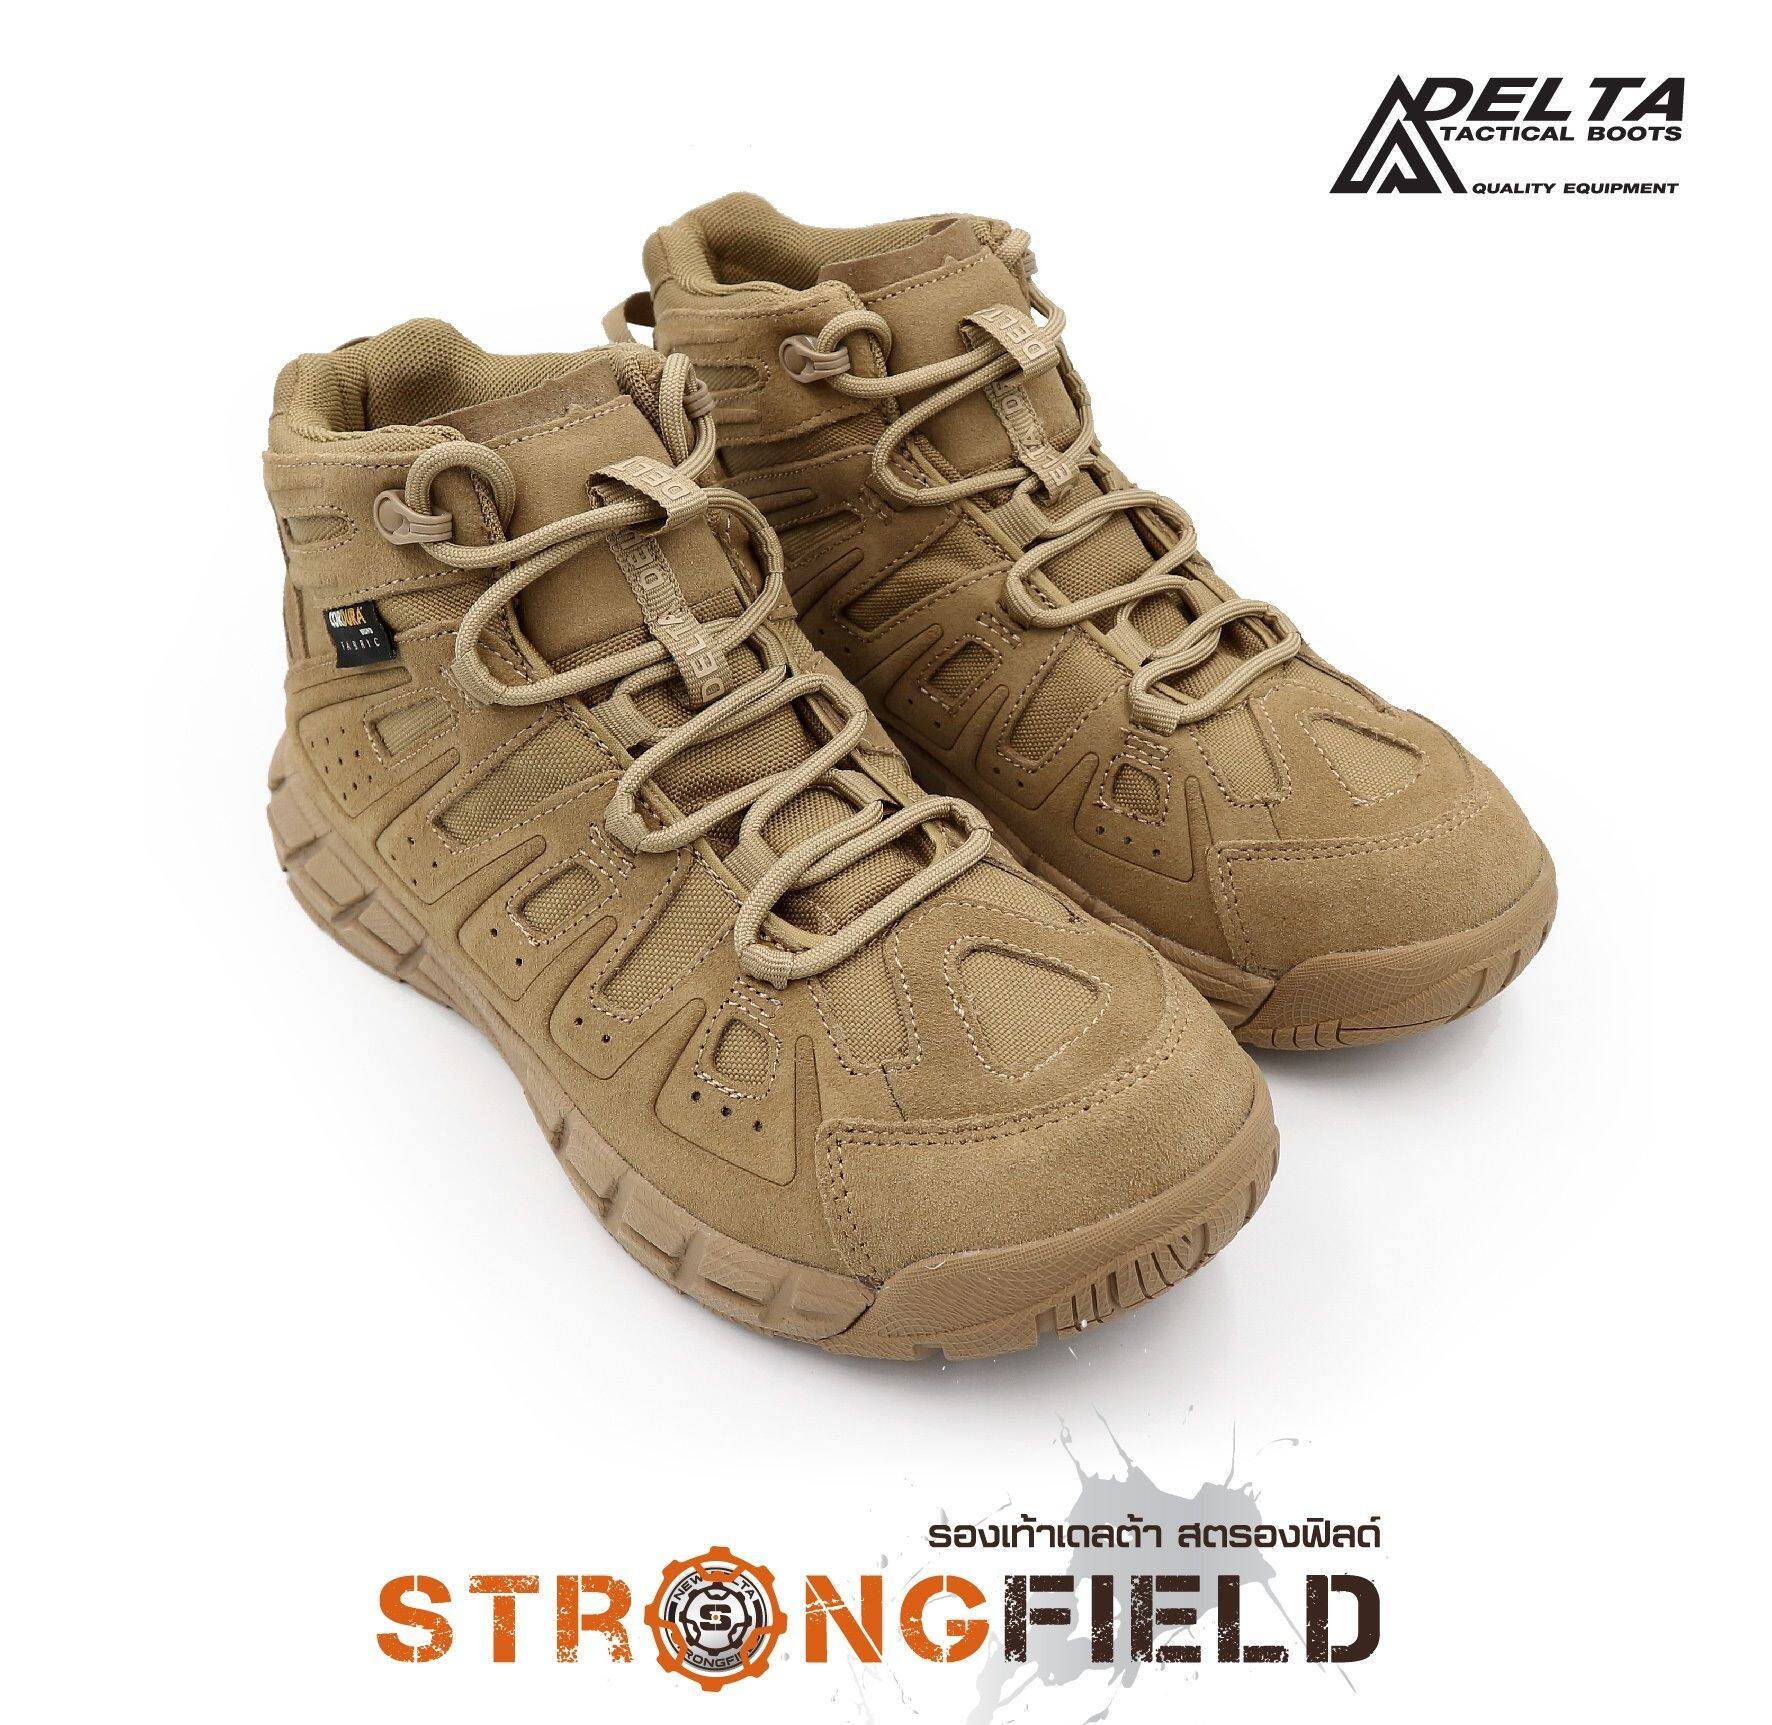 🇹🇭 ไทยแลนด์ แทคติคอล รองเท้า NEW DELTA Strongfield ใหม่ล่าสุด !! รองเท้ายุทธวิธี รองเท้าหุ้มข้อ รองเท้าผ้าใบ รองเท้าผู้ชาย รองเท้าเดินป่า